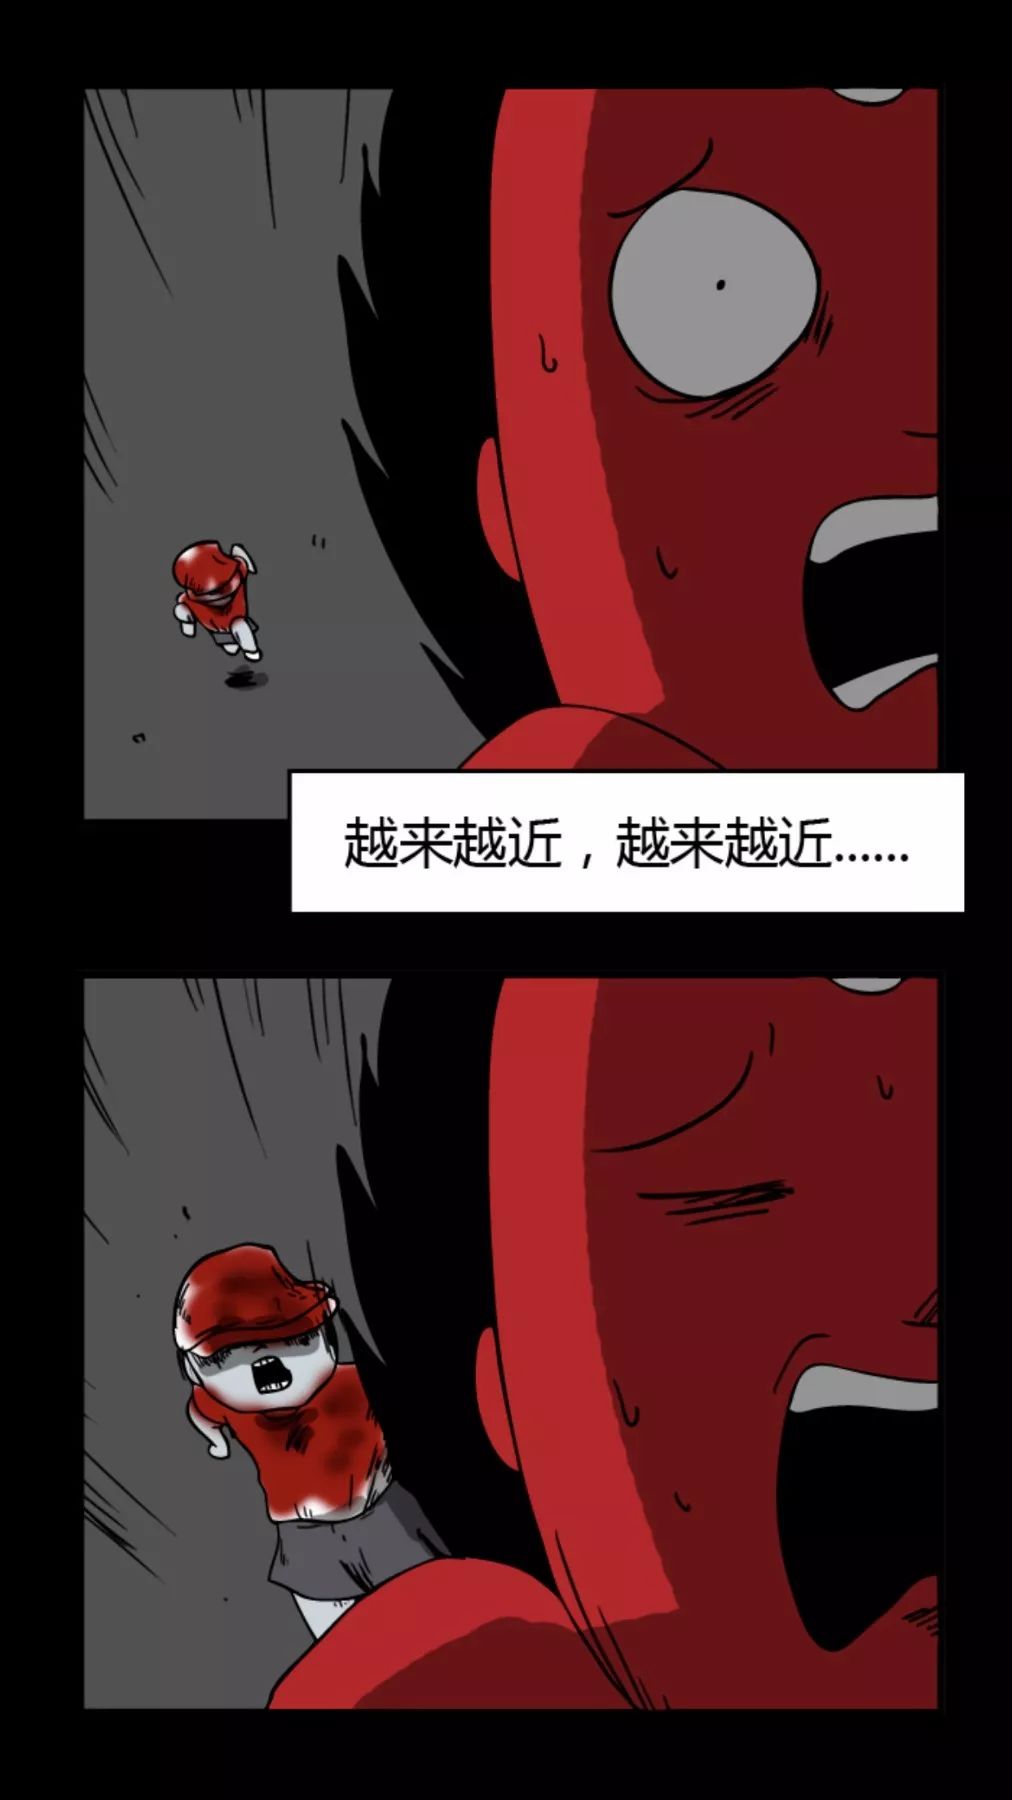 【靈異漫畫】《跑步》染紅帽的小男孩 靈異 第9張